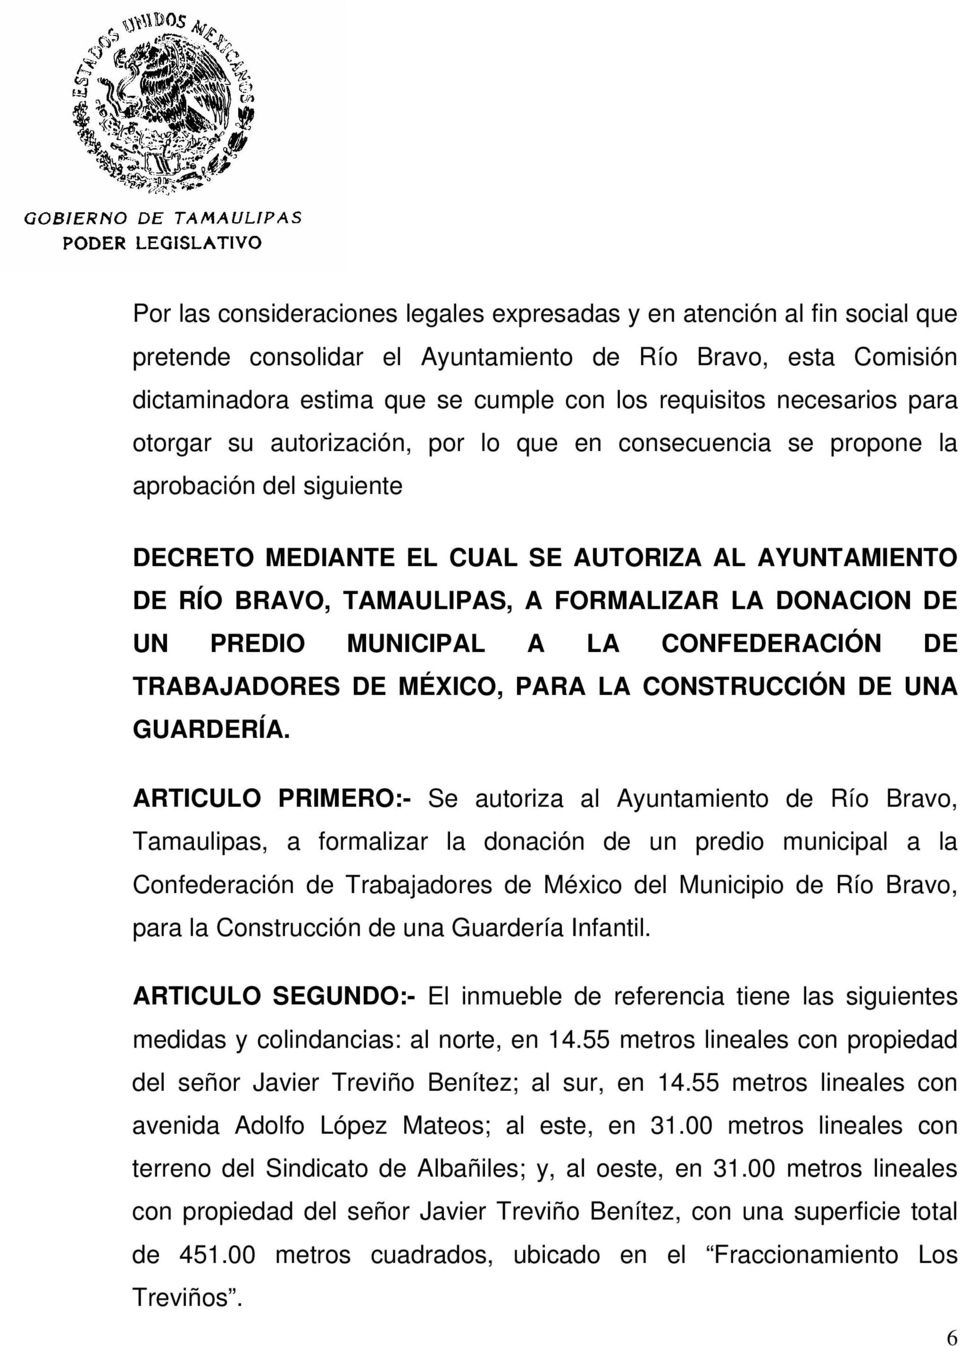 LA DONACION DE UN PREDIO MUNICIPAL A LA CONFEDERACIÓN DE TRABAJADORES DE MÉXICO, PARA LA CONSTRUCCIÓN DE UNA GUARDERÍA.